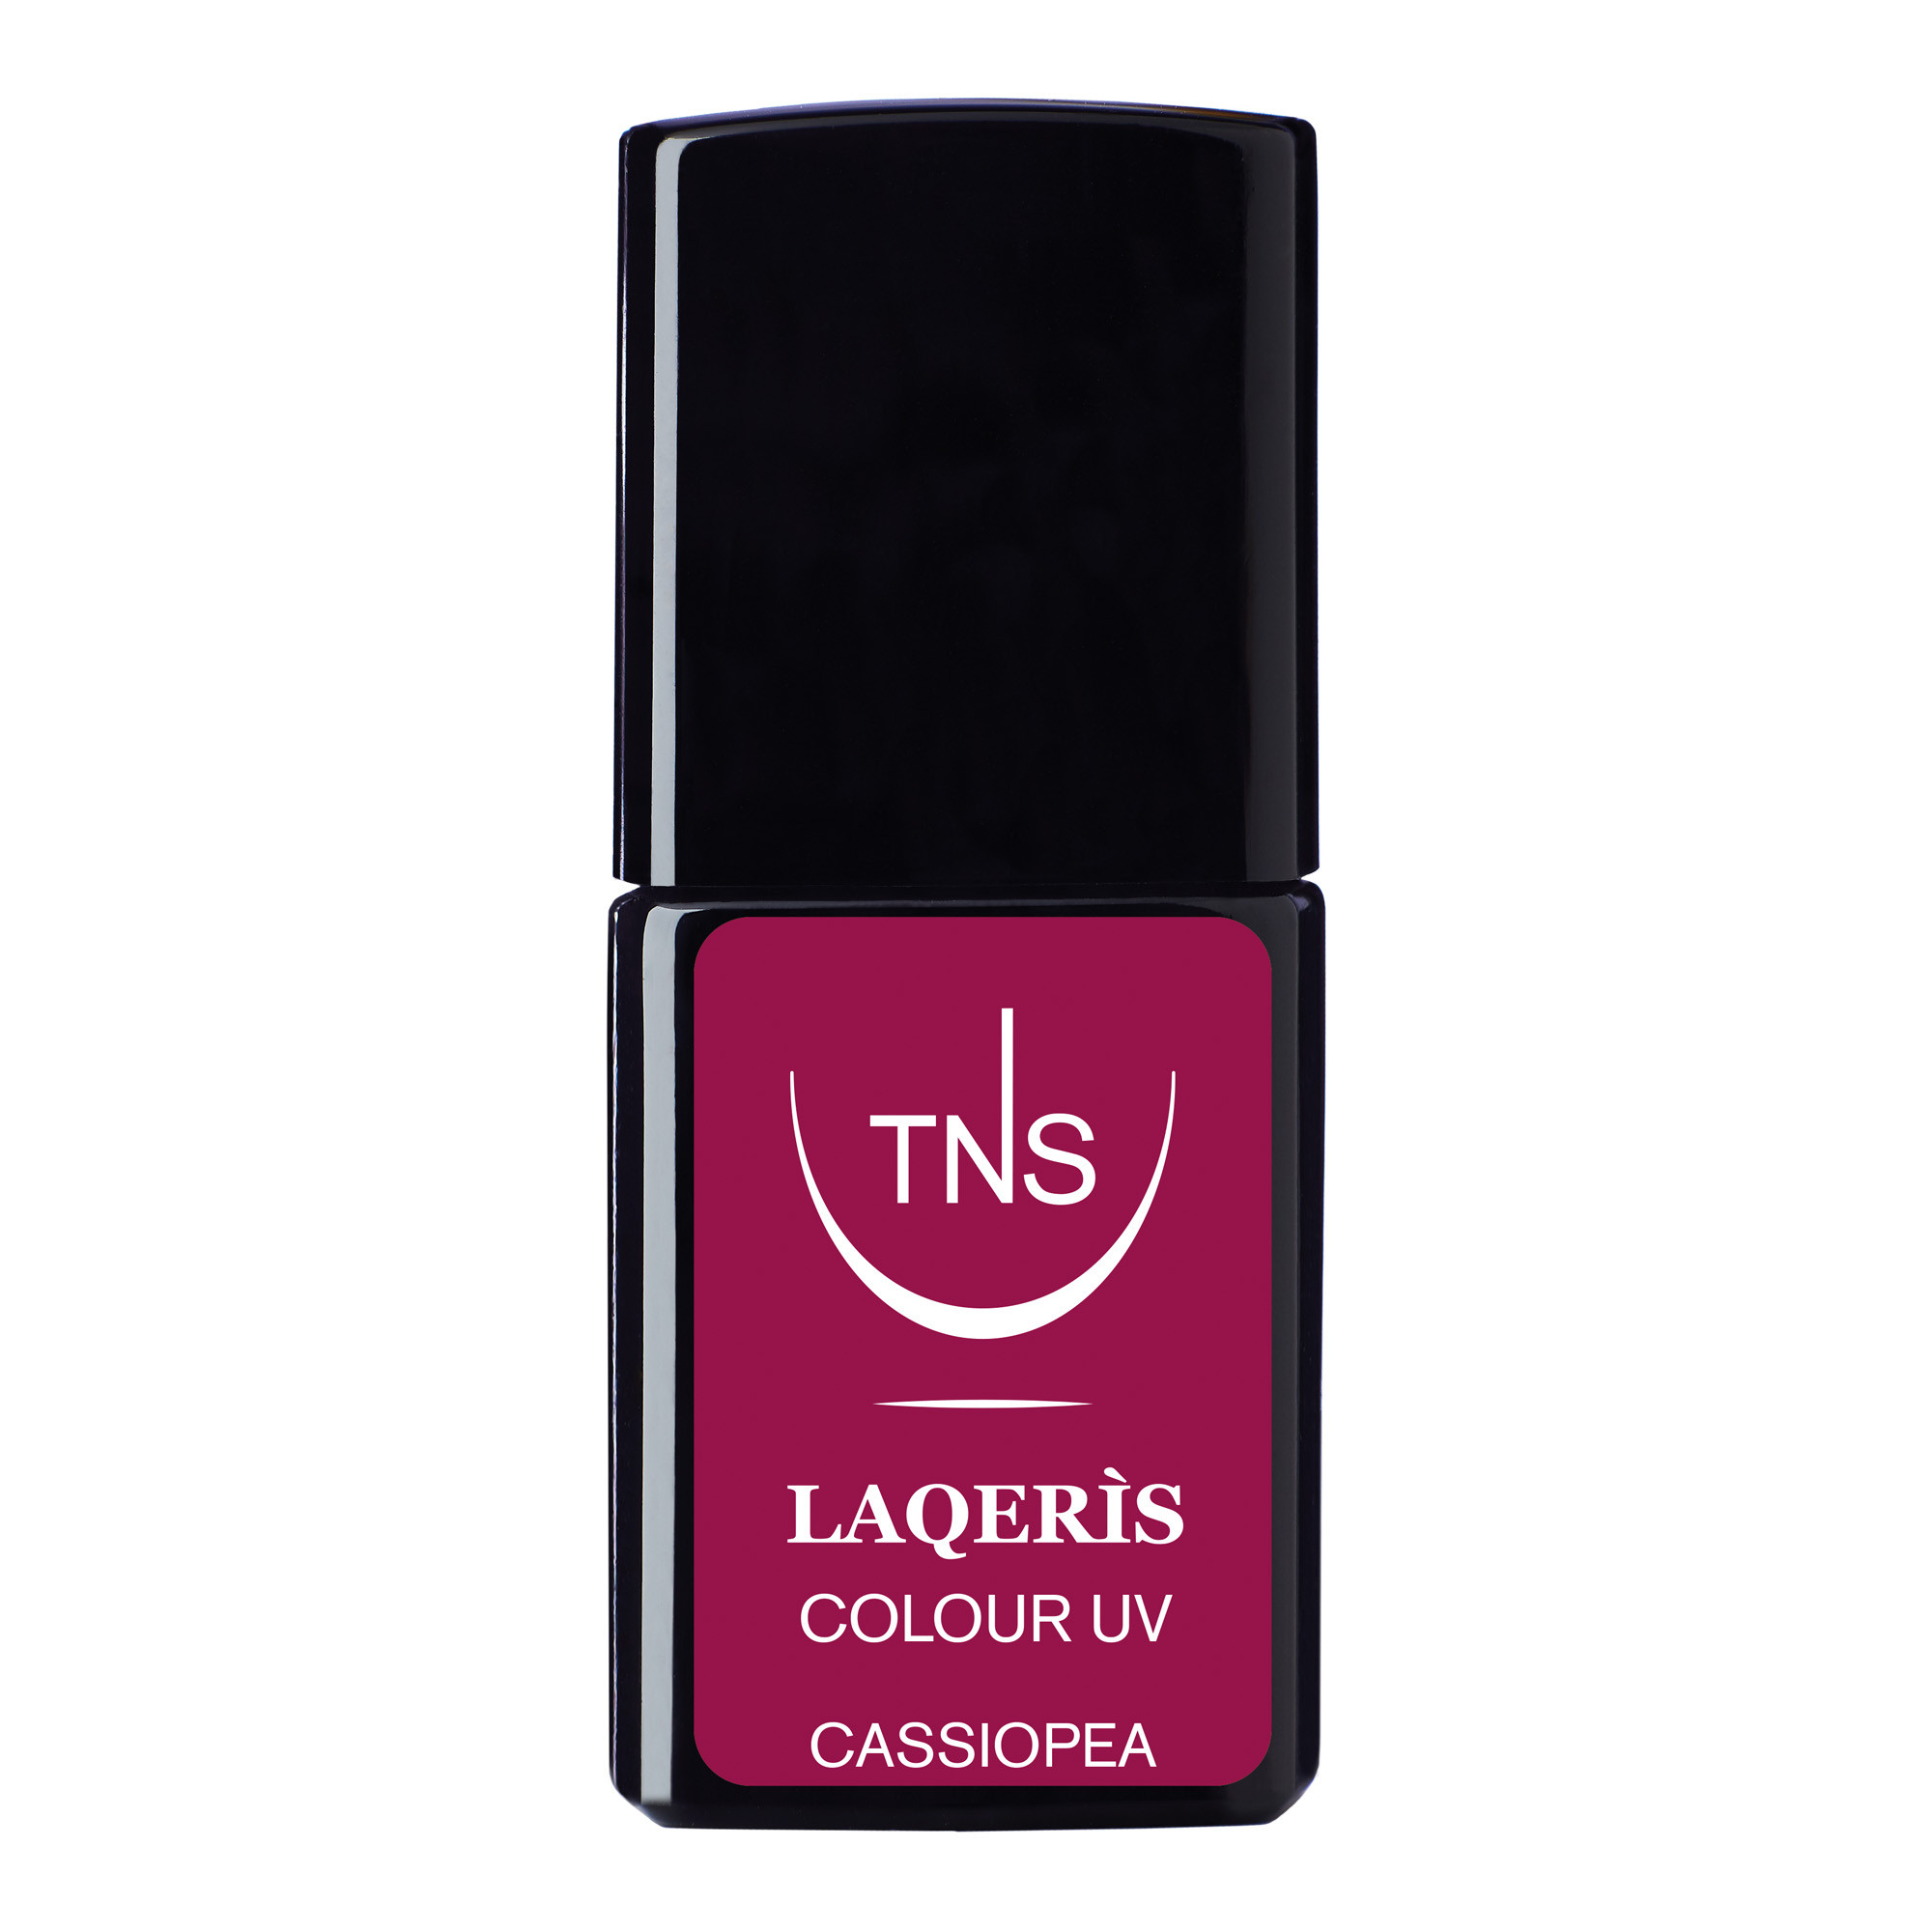 Semi-permanent nail polish fuchsia pink Cassiopea 10 ml Laqerìs TNS